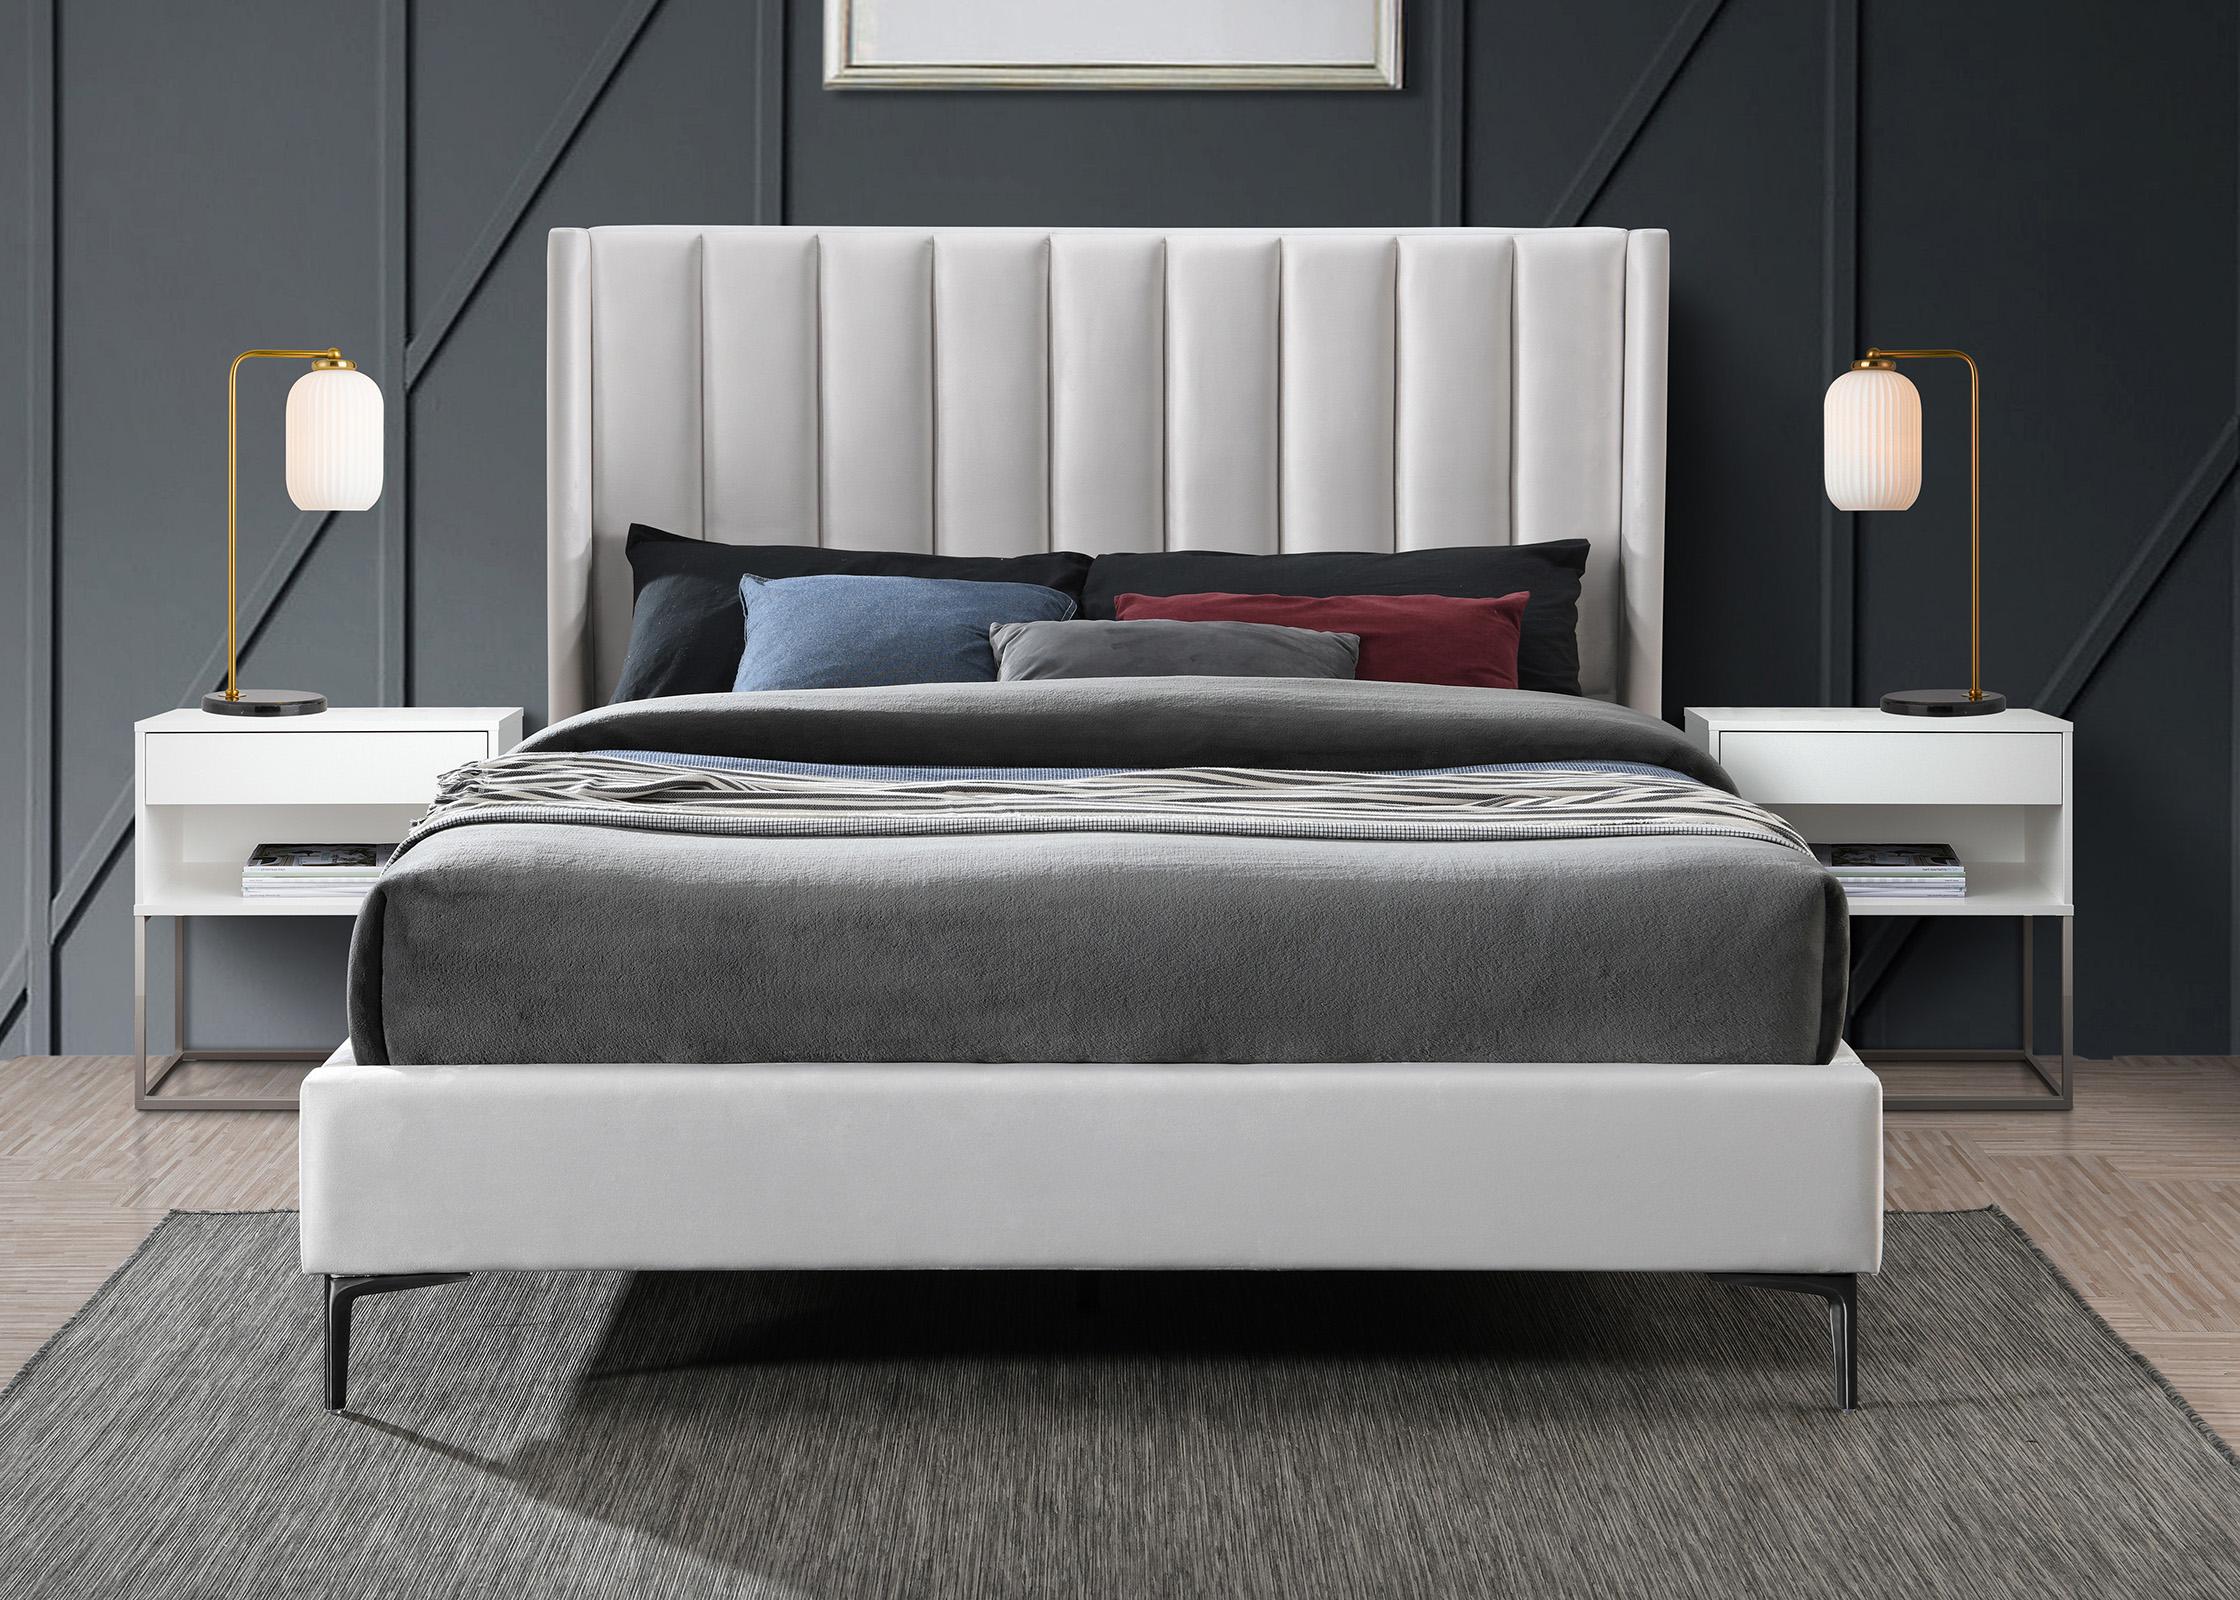 

    
Meridian Furniture NadiaCream-Q Platform Bed Cream NadiaCream-Q
